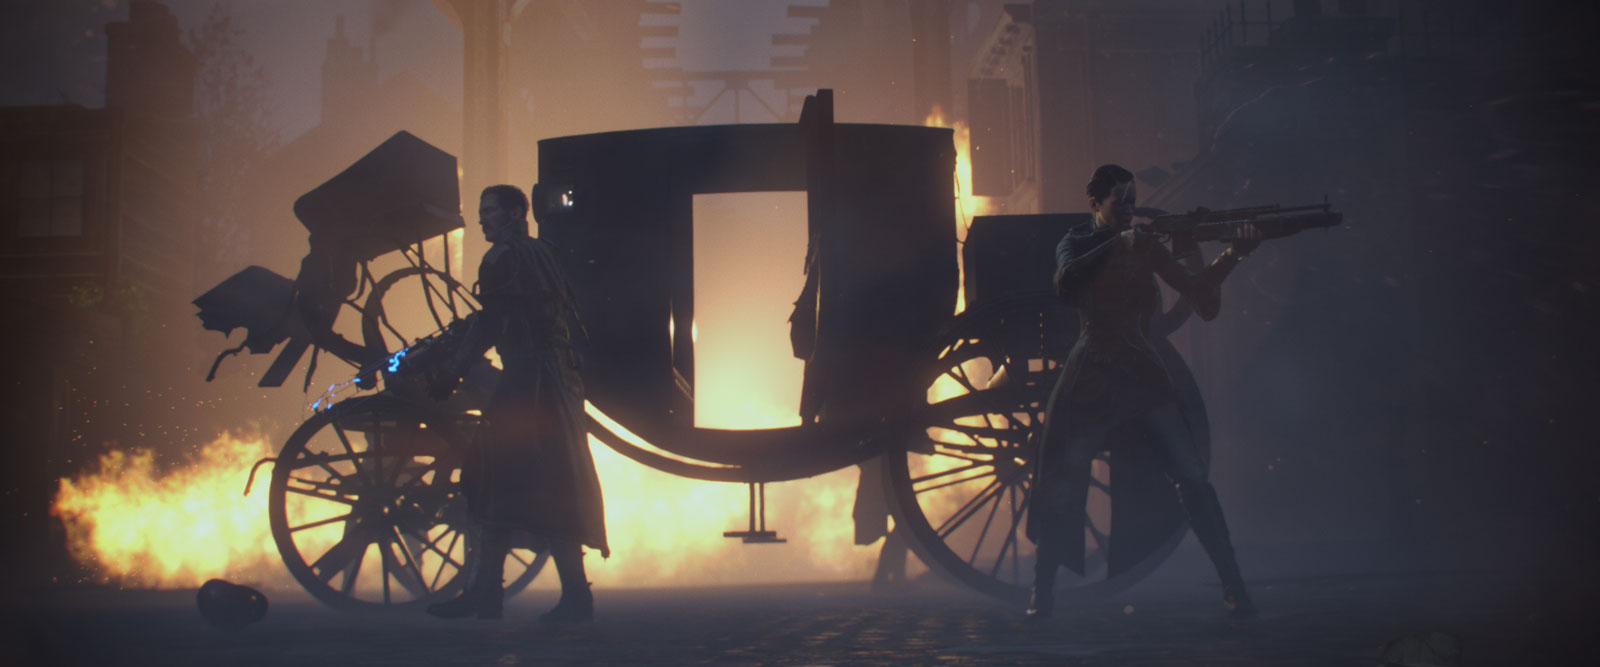 Les critiques sont unanimes à l'égard du jeu The Order : 1886, qui comporte une surdose de cinématiques.